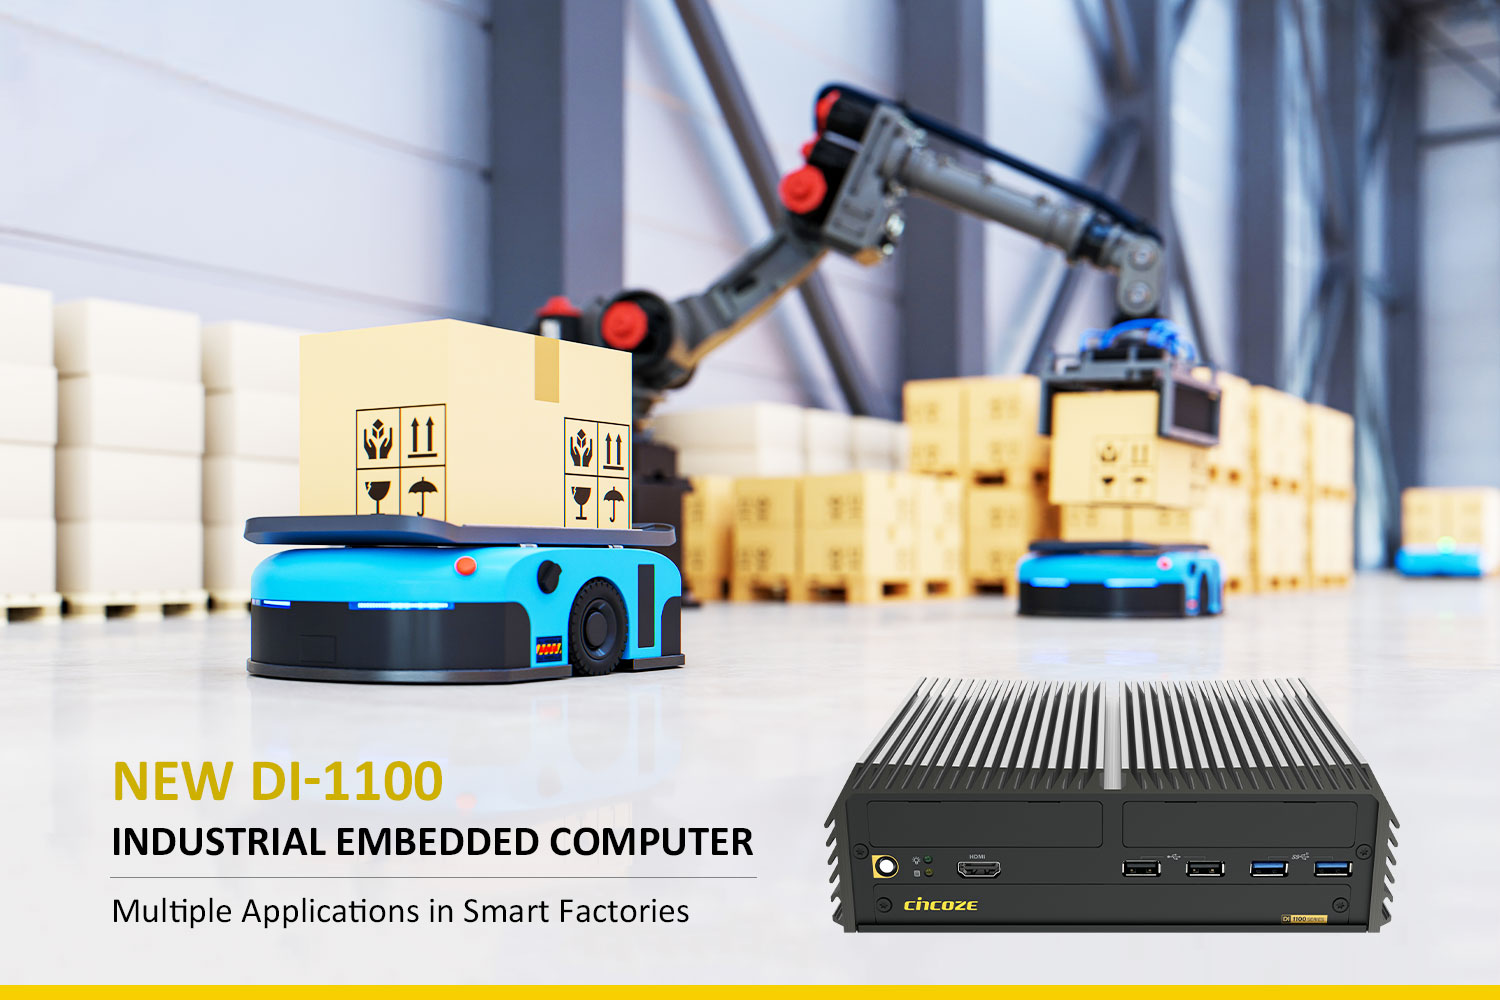 Cincoze 德承全新嵌入式工业电脑 DI-1100 进驻智能工厂多元应用